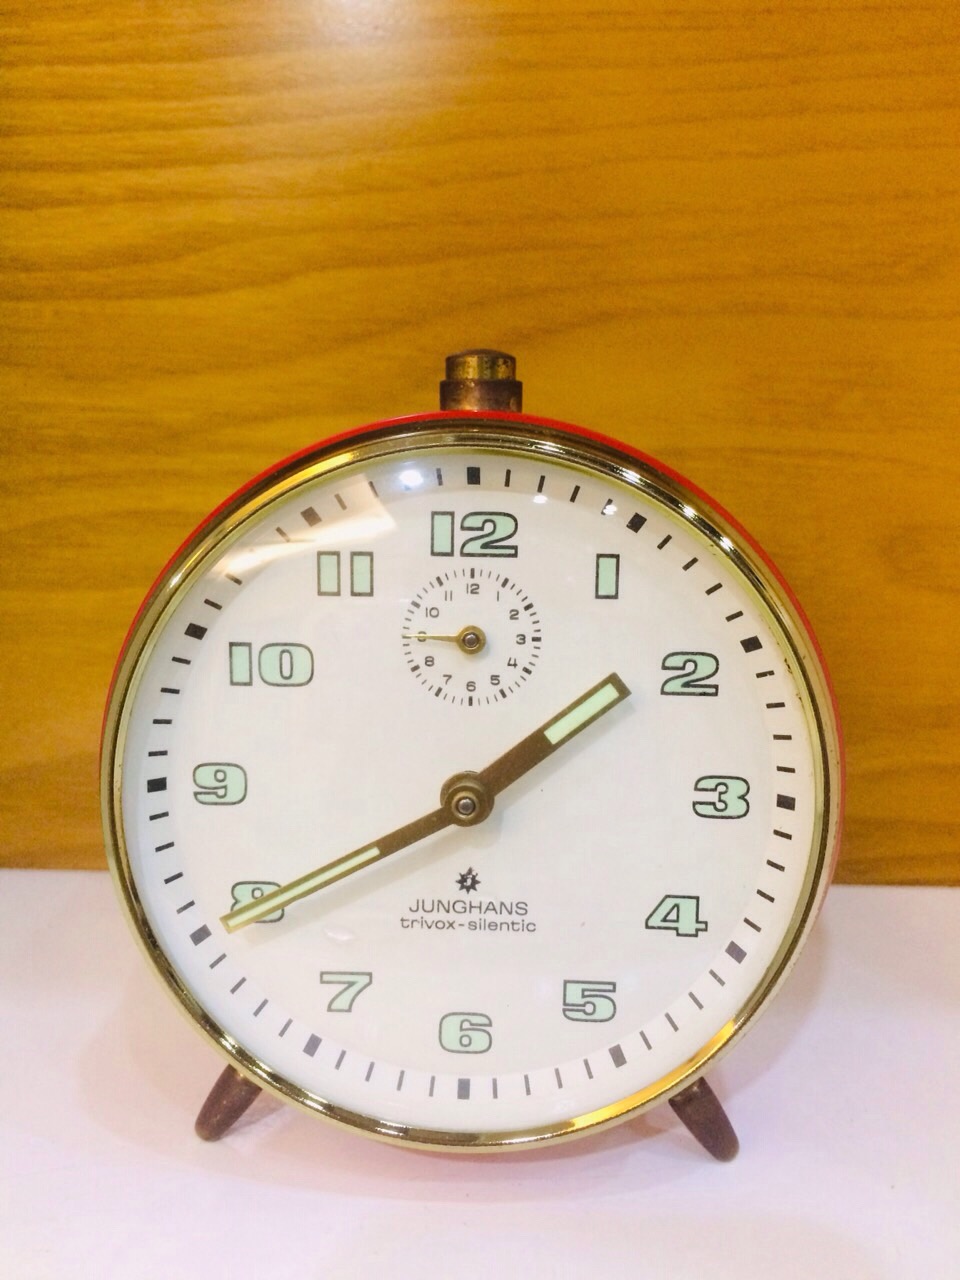 Đồng hồ Junghans vỏ đỏ mới, còn cả tem mác sau máy - mã số MS772